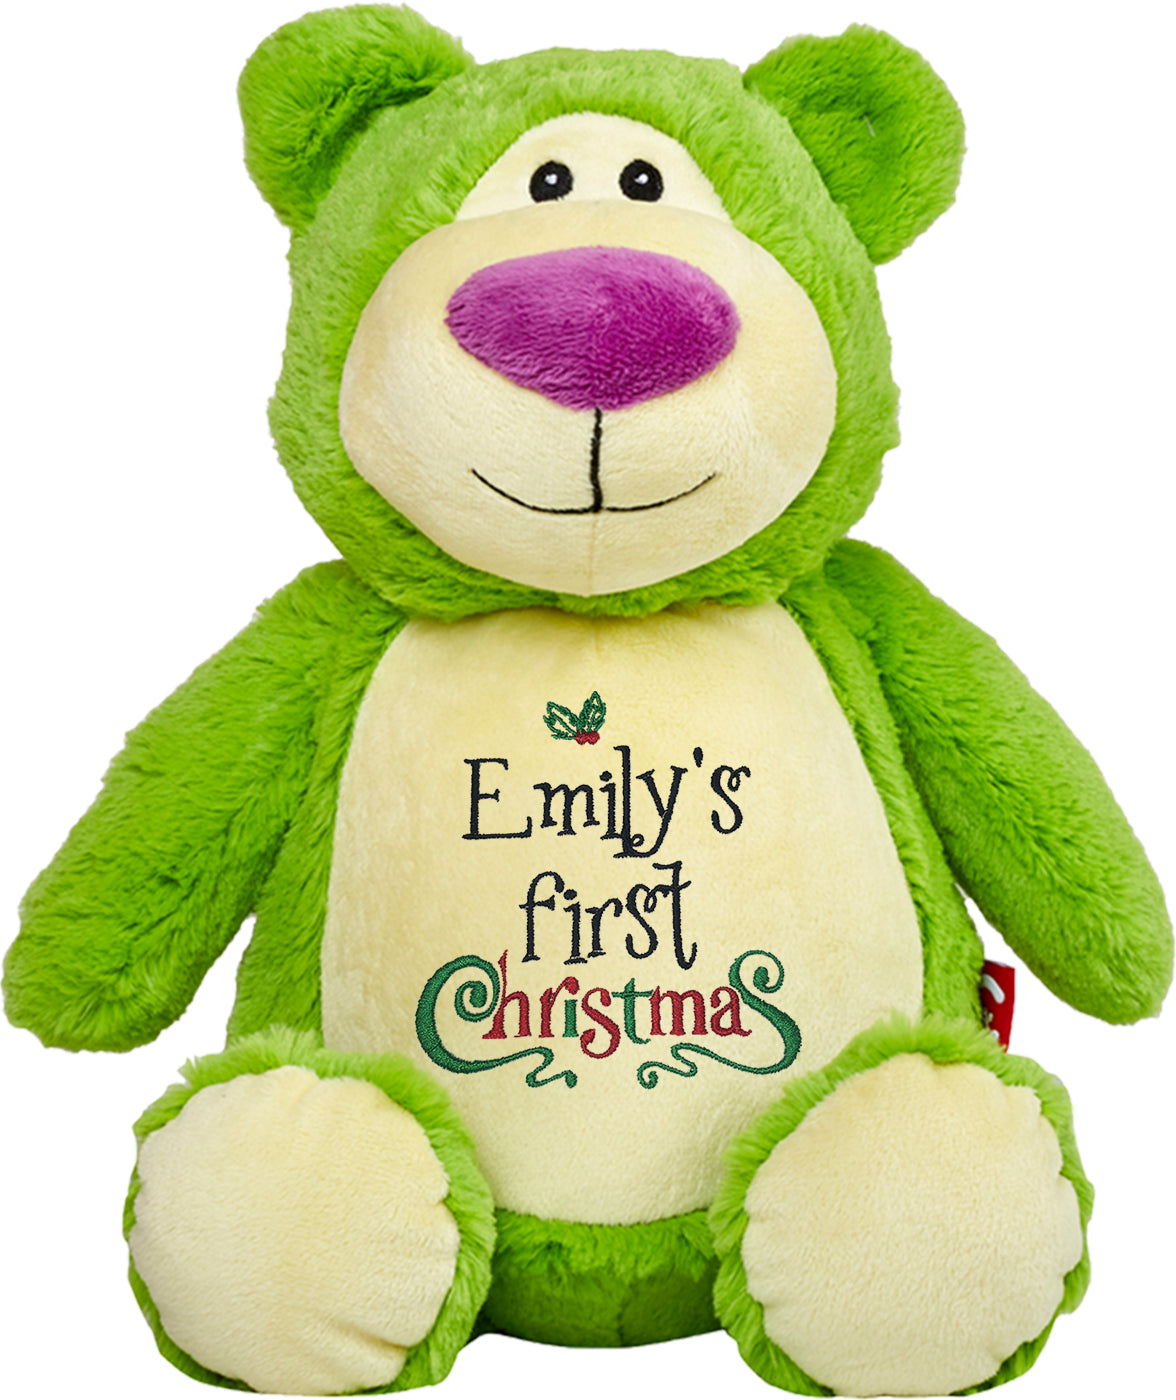 Personalized Stuffed Lime Bear